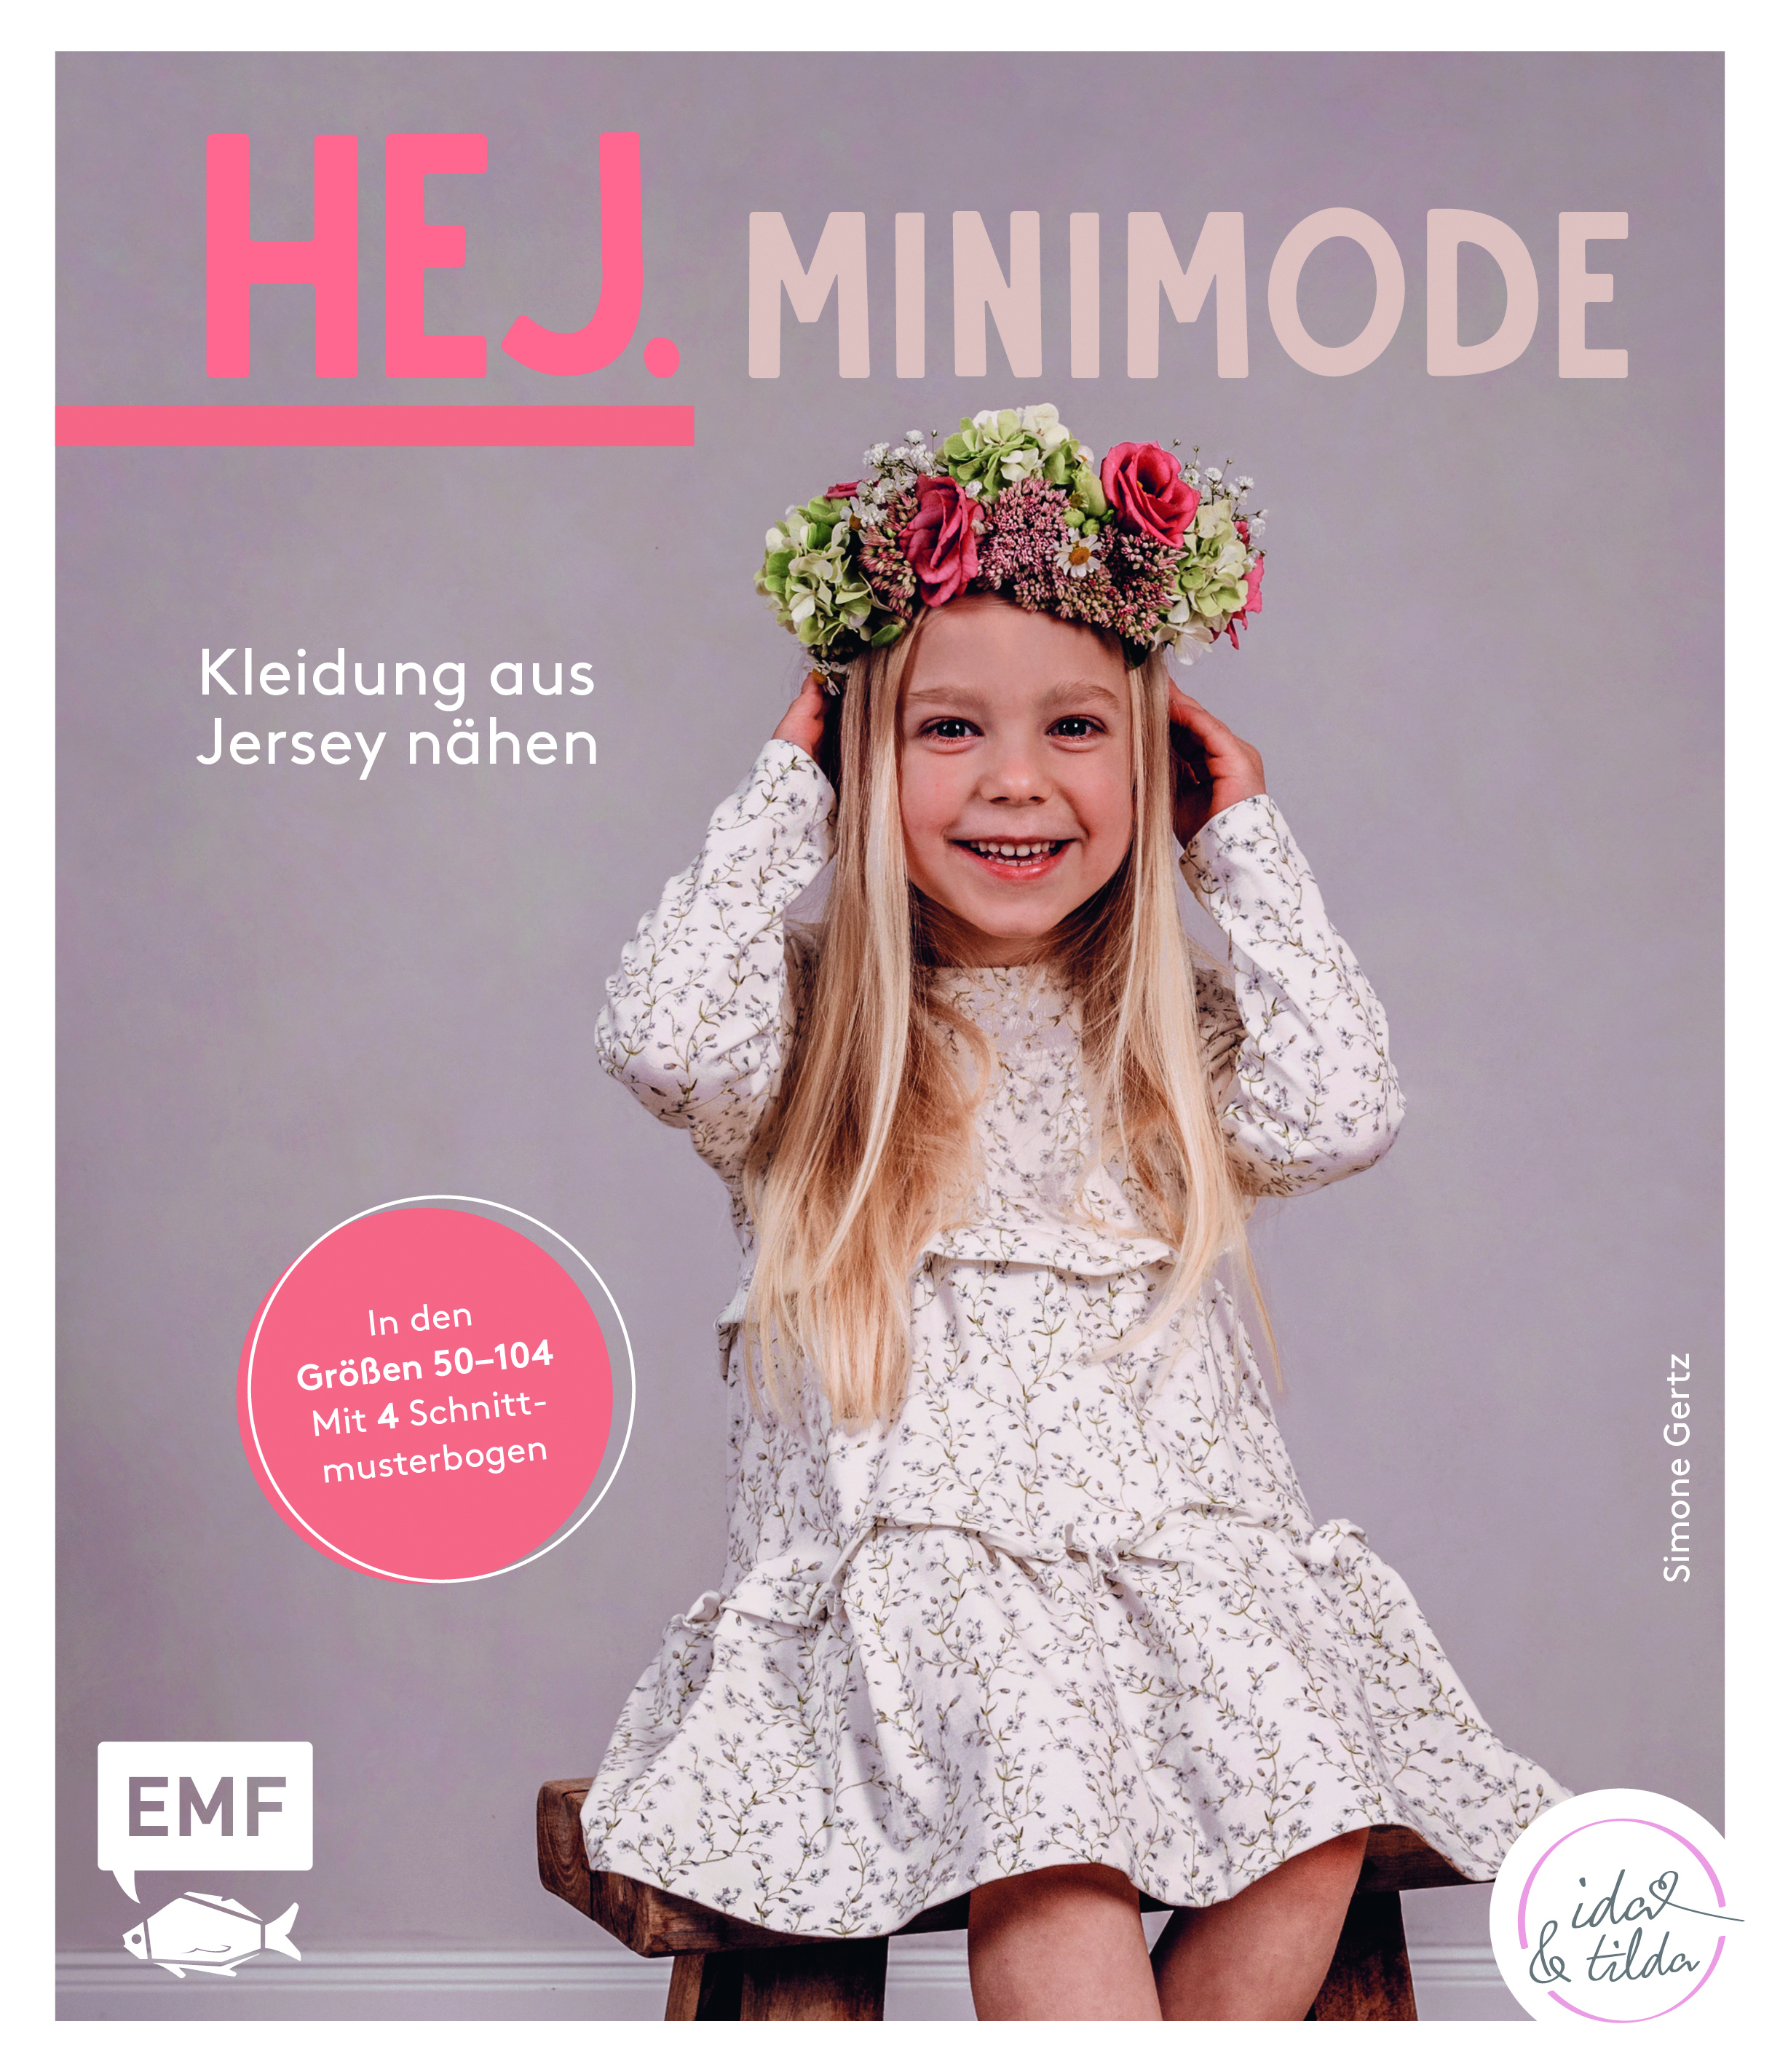 Schnittmuster Buch Hej Minimode – Kleidung aus Jersey nähen Gr. 50-104 